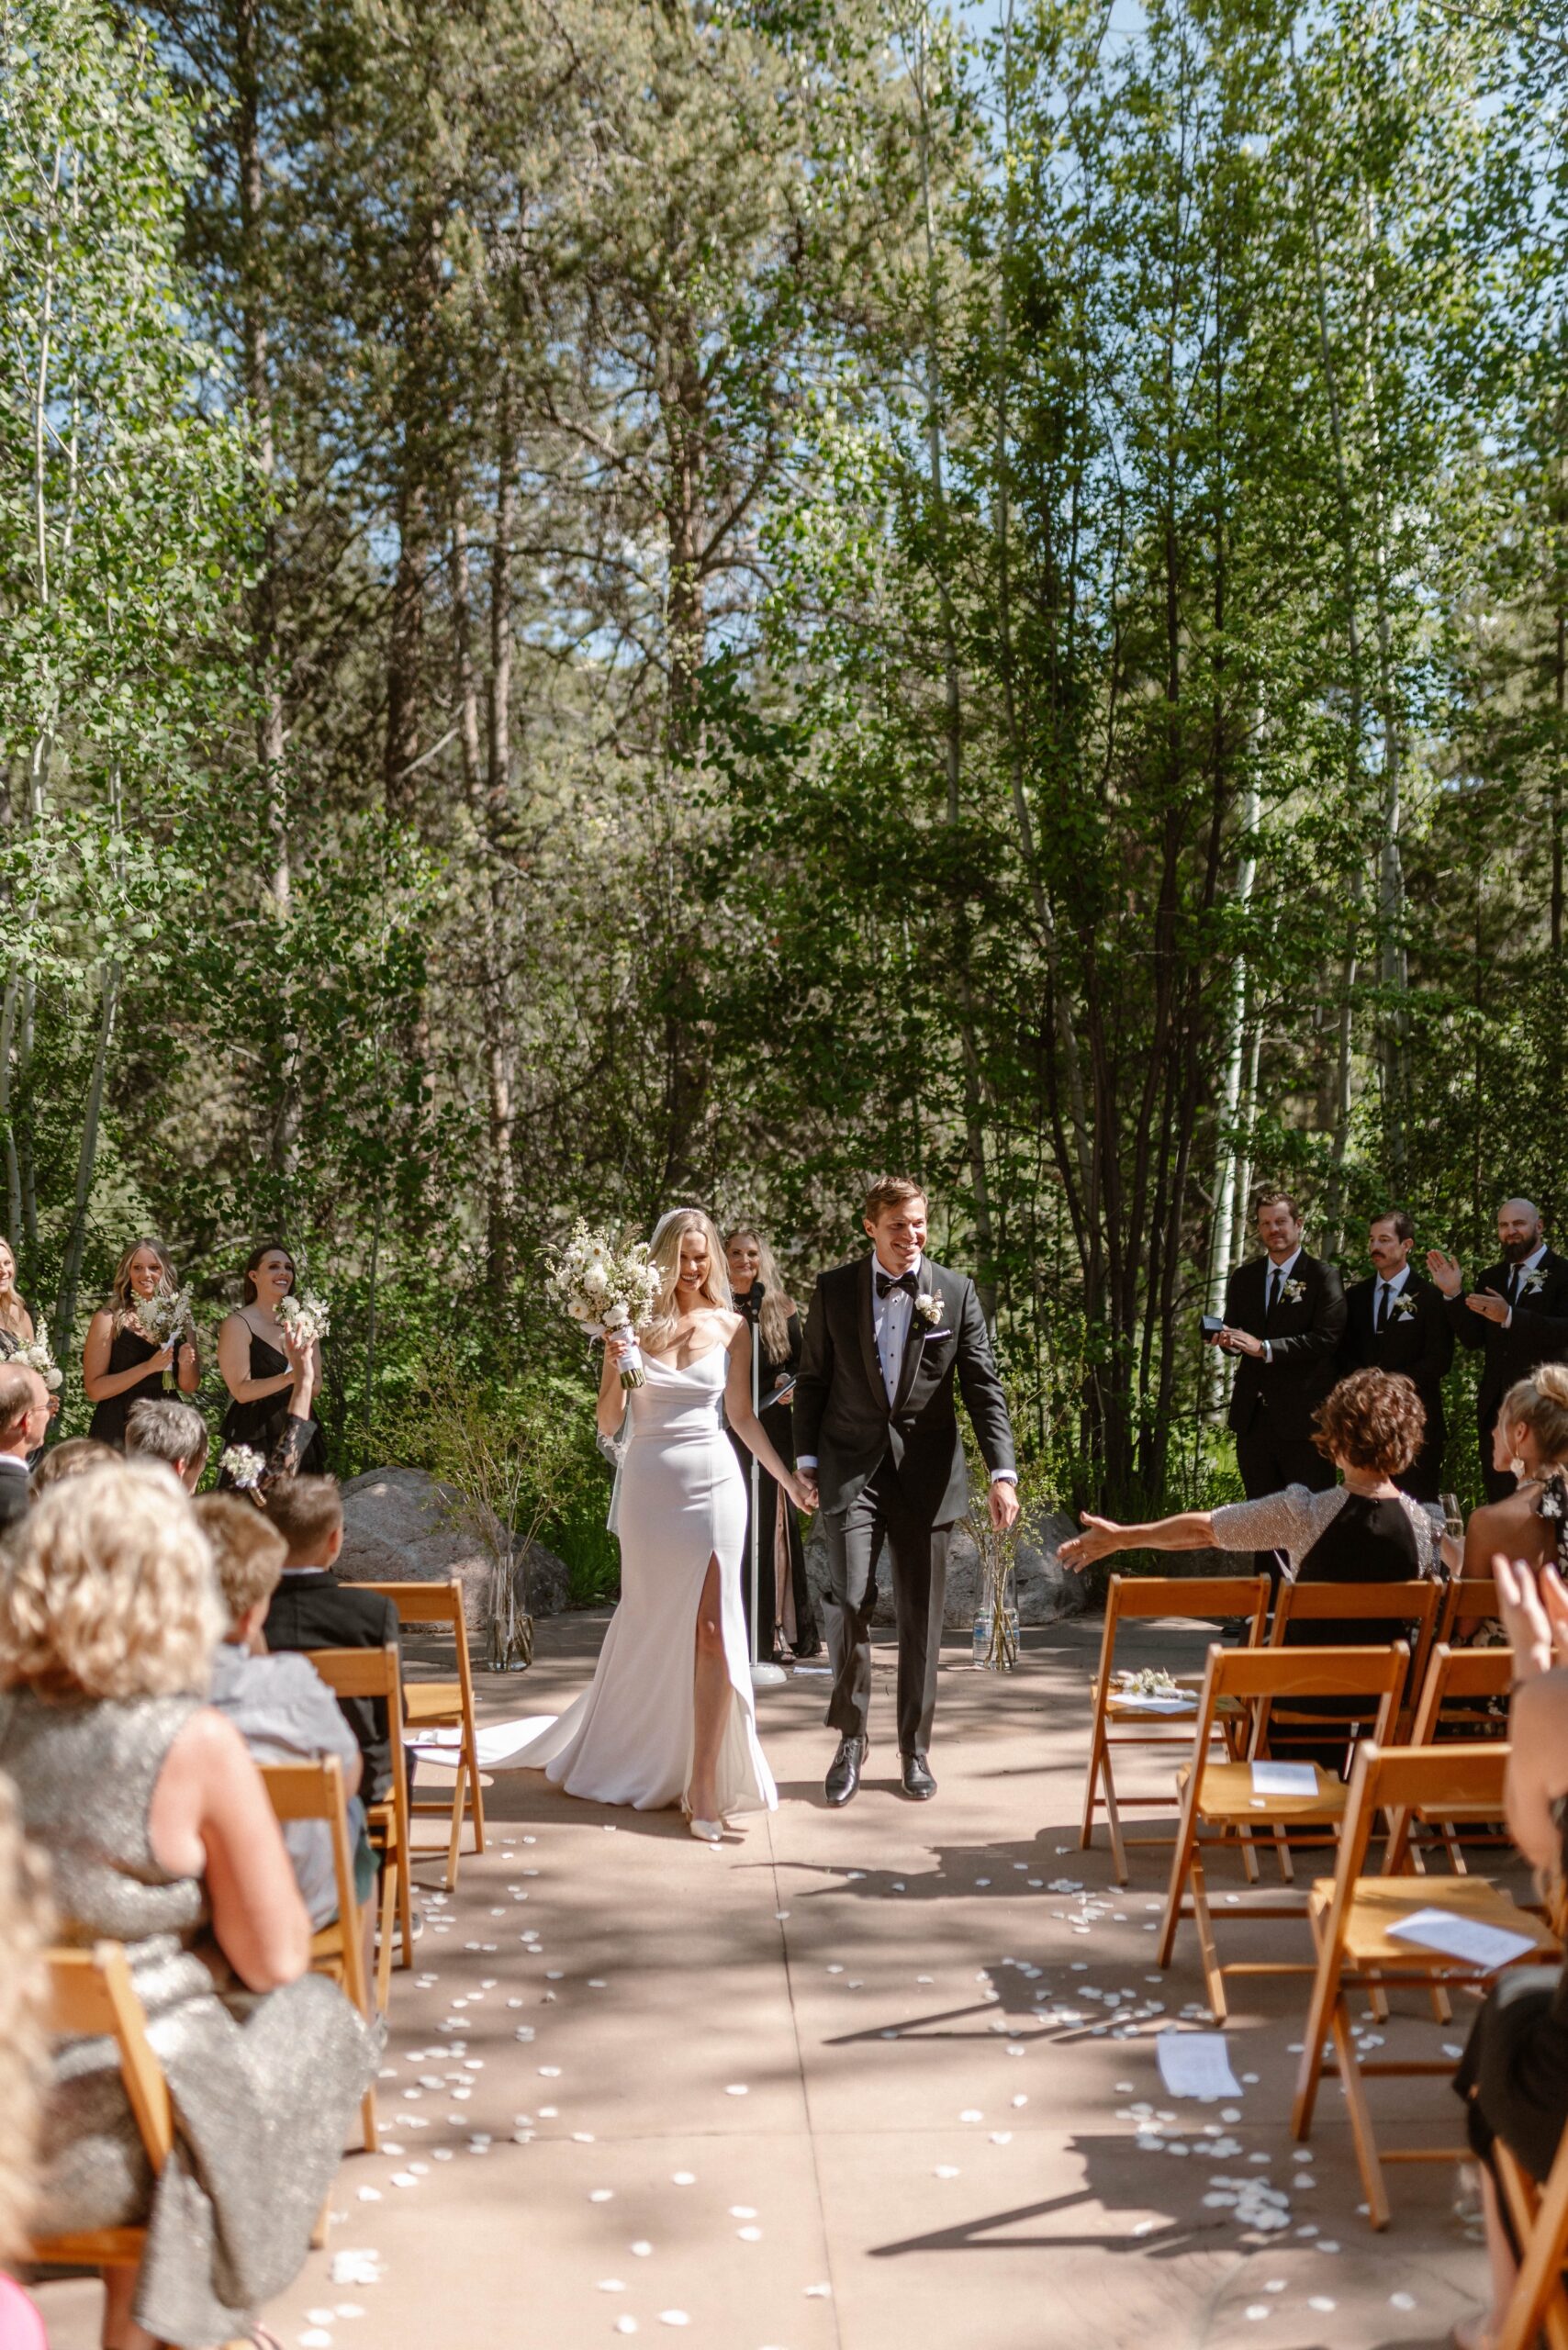 Wedding ceremony in Vail, Colorado. Photo by Colorado wedding photographer Ashley Joyce